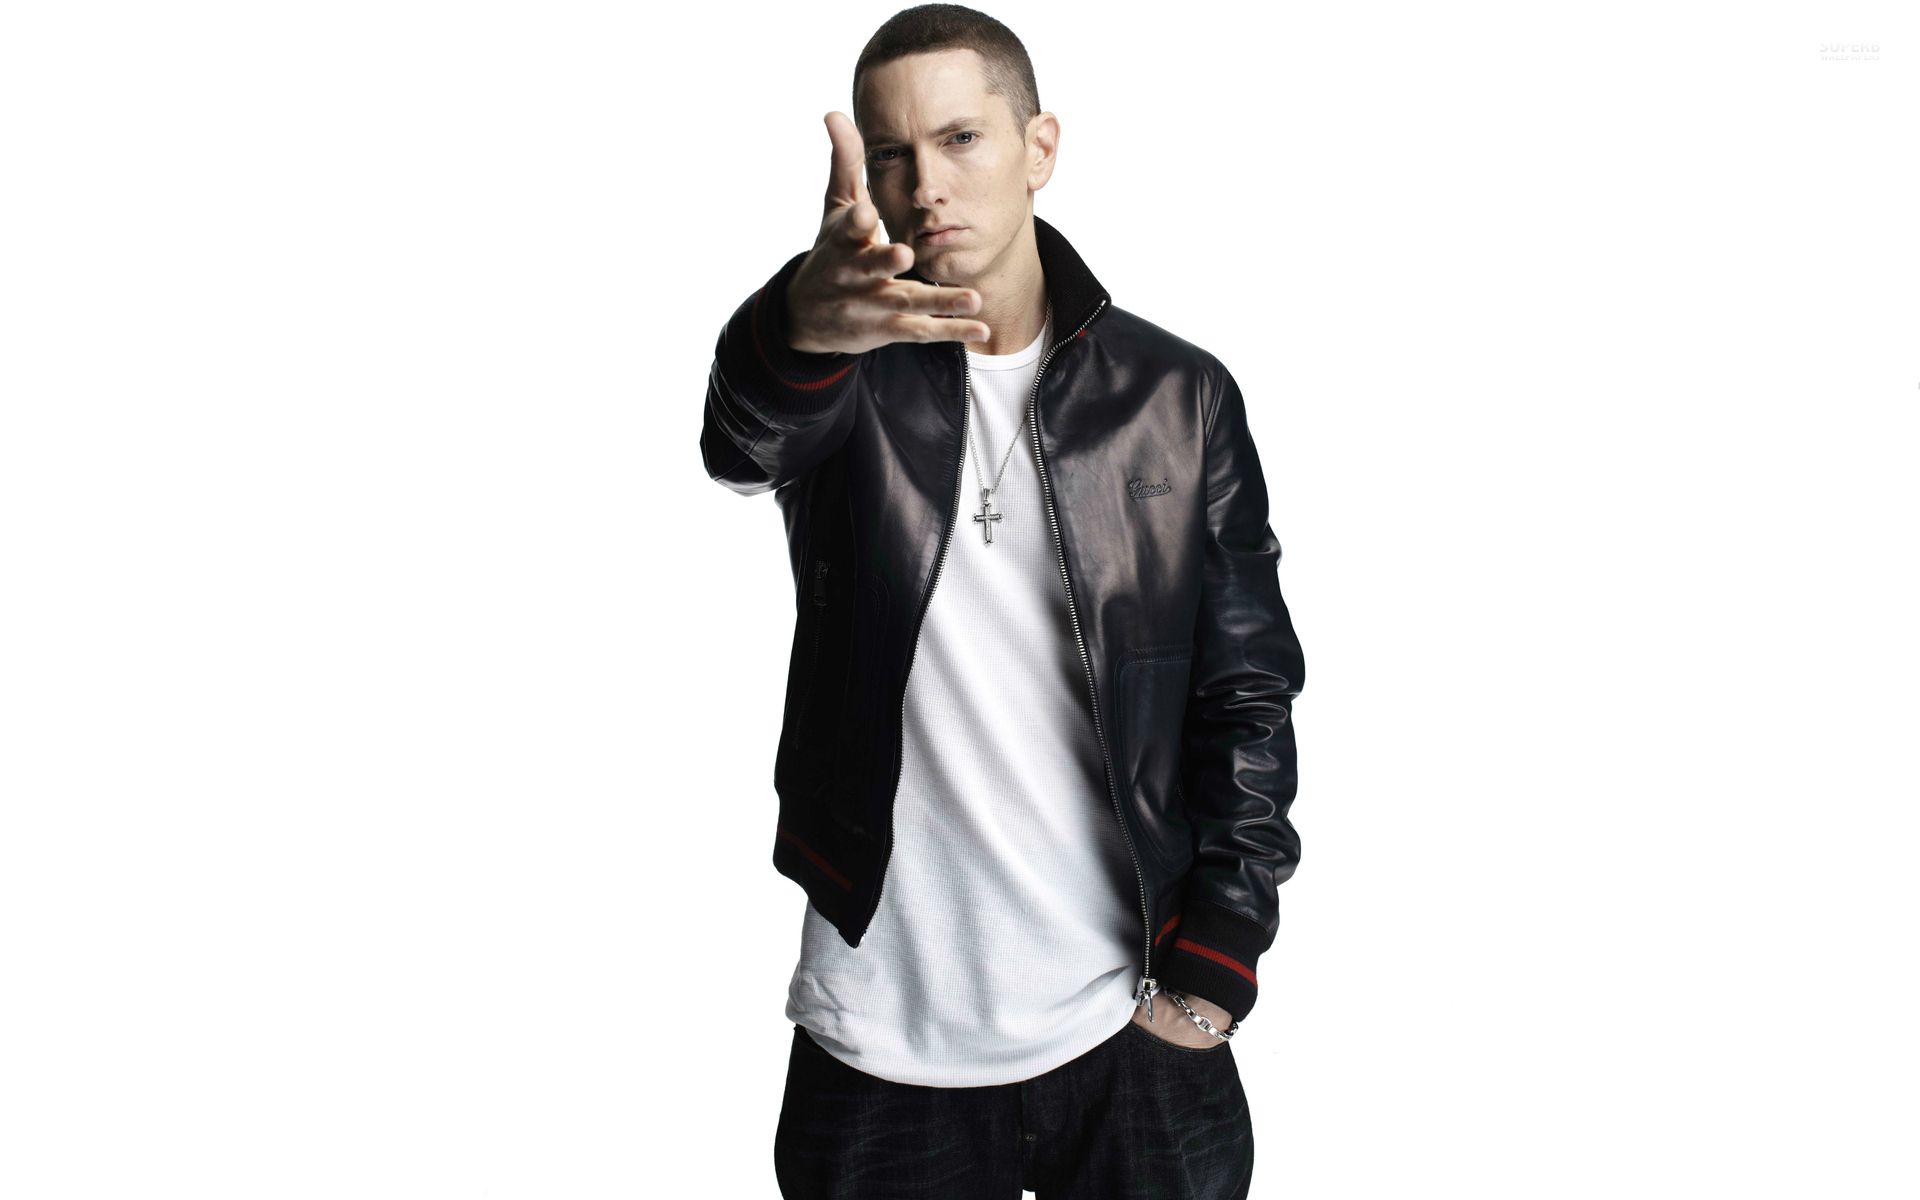 Not Afraid - Eminem Computer Wallpapers, Desktop Backgrounds